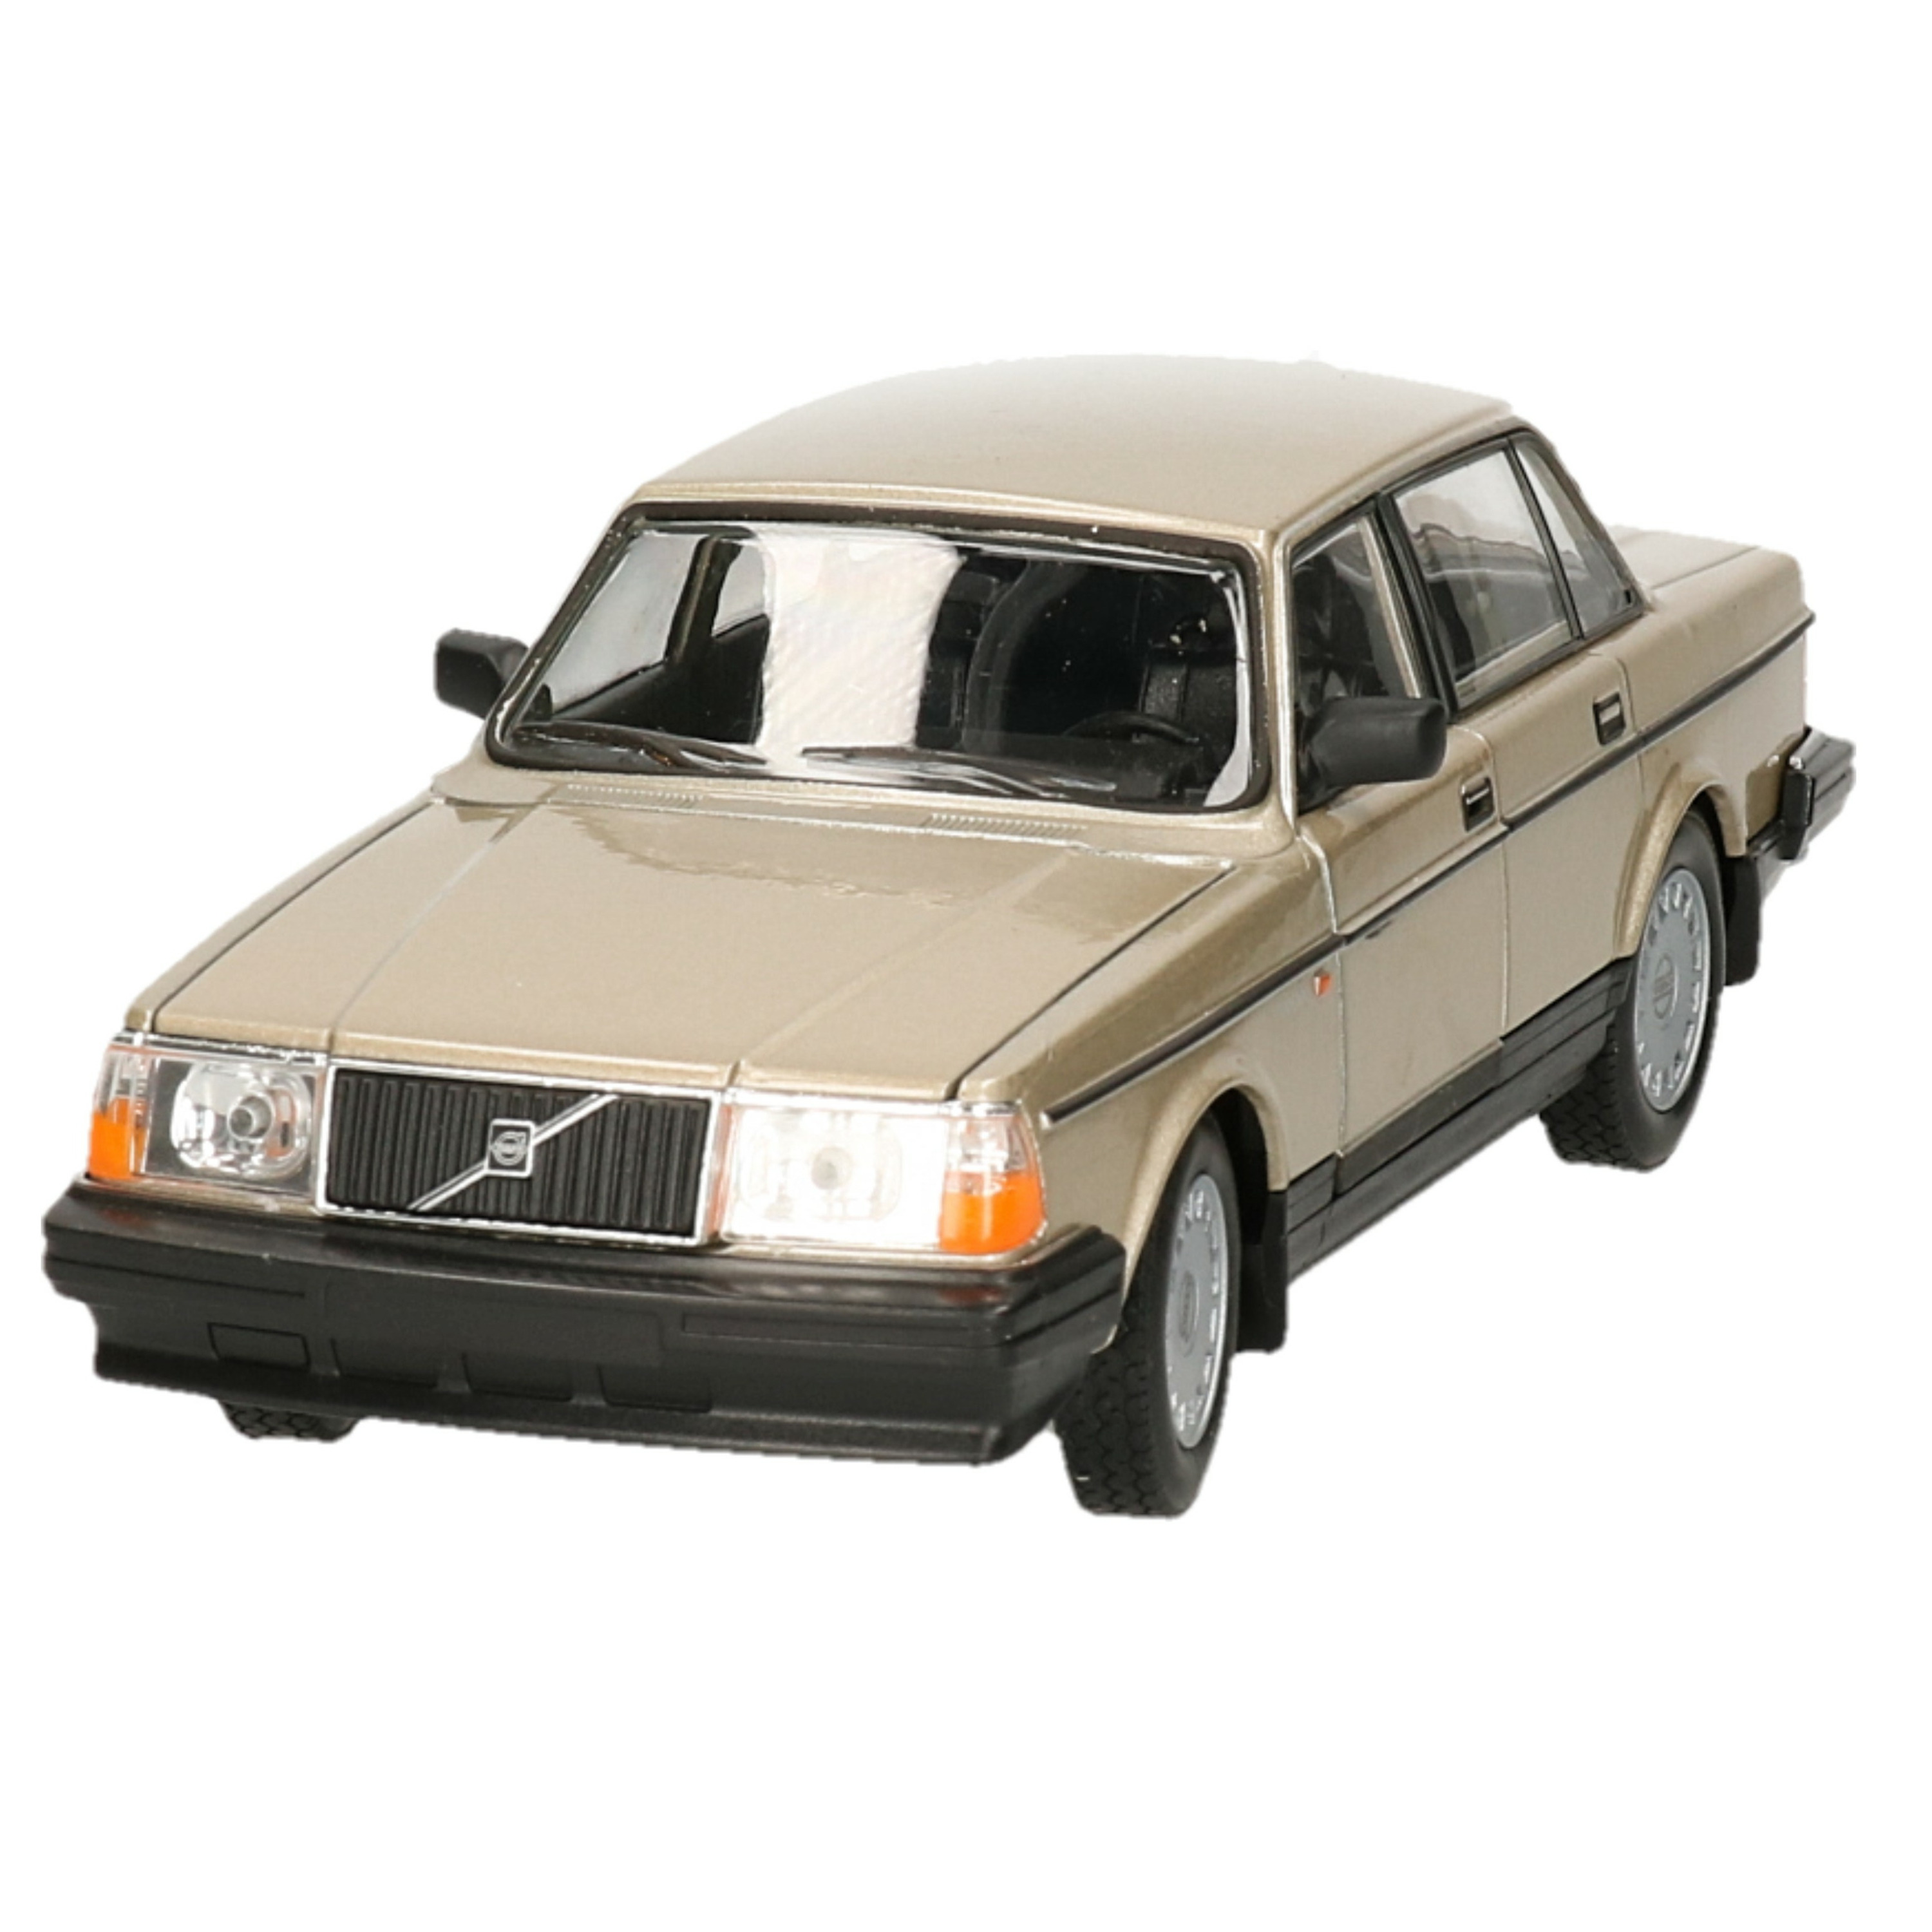 Modelauto-speelgoedauto Volvo 240GL 1986 schaal 1:24-20 x 7 x 6 cm